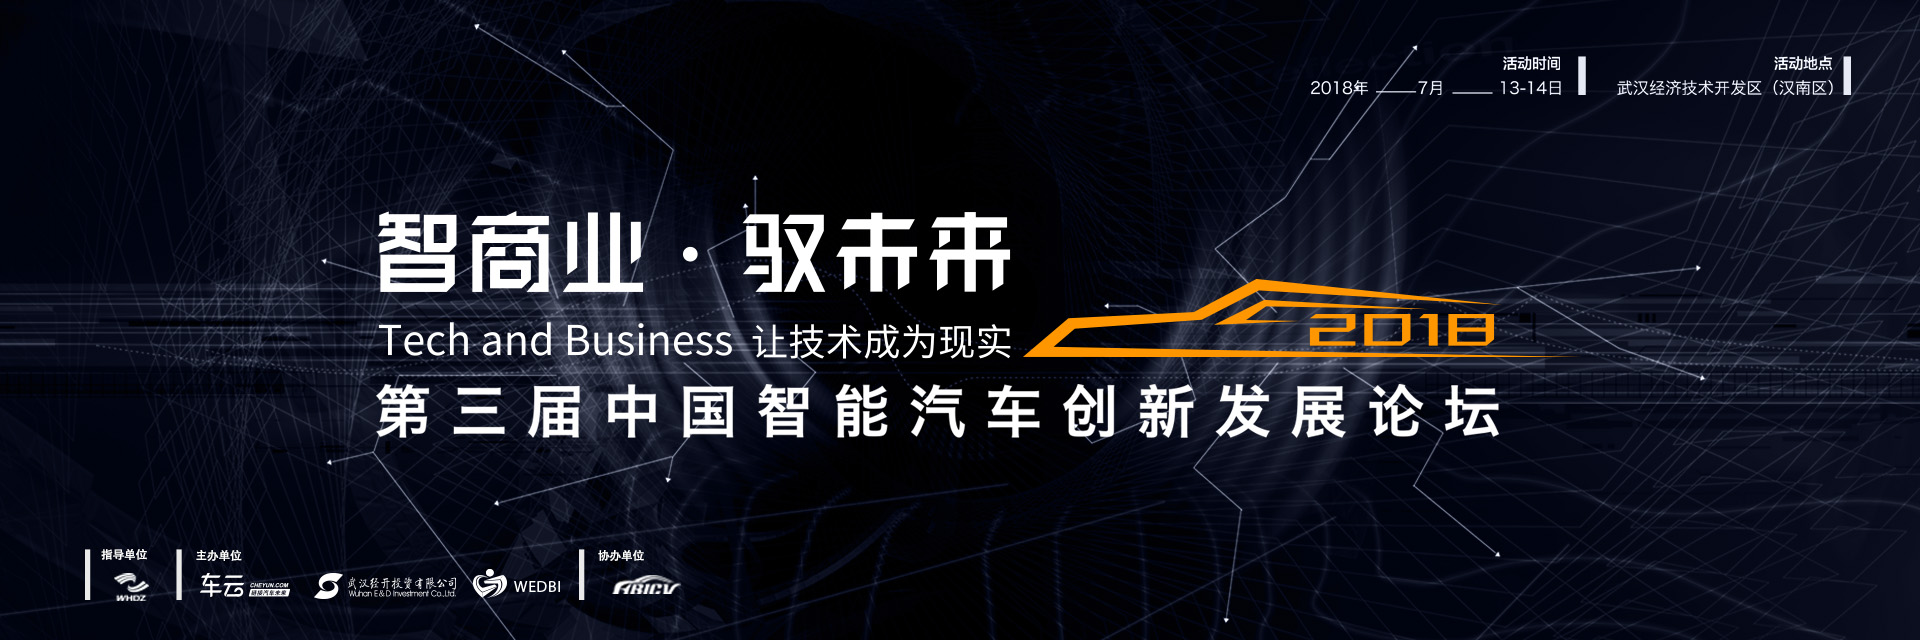 2018第三届中国智能汽车创新发展论坛